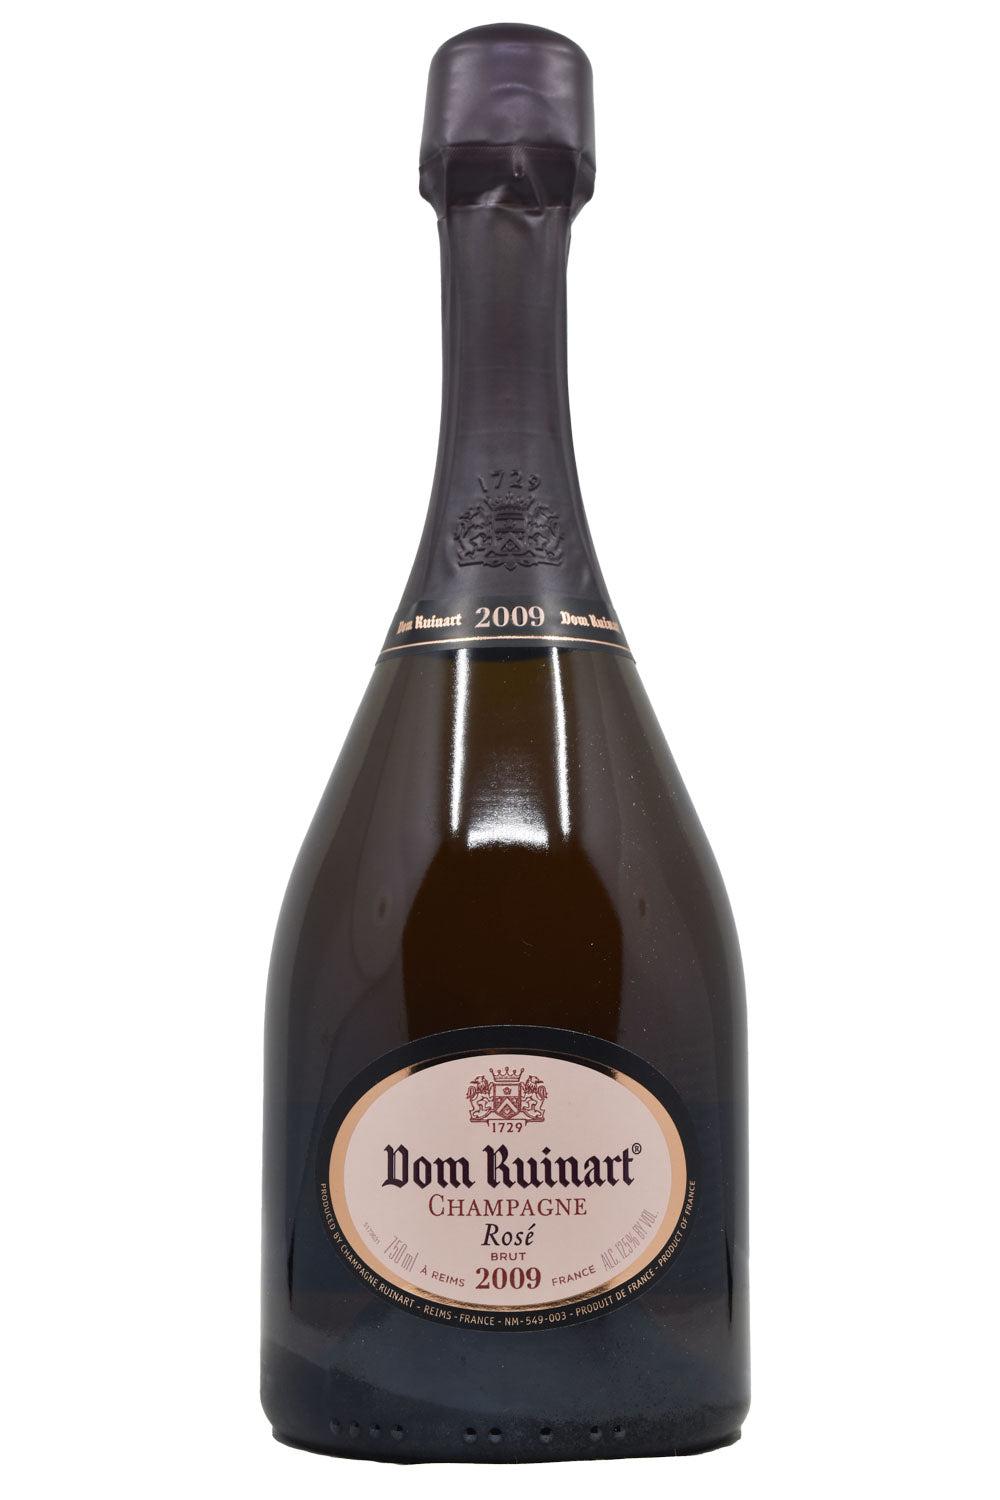 Ruinart Champagne Brut Rosé NV 750ml